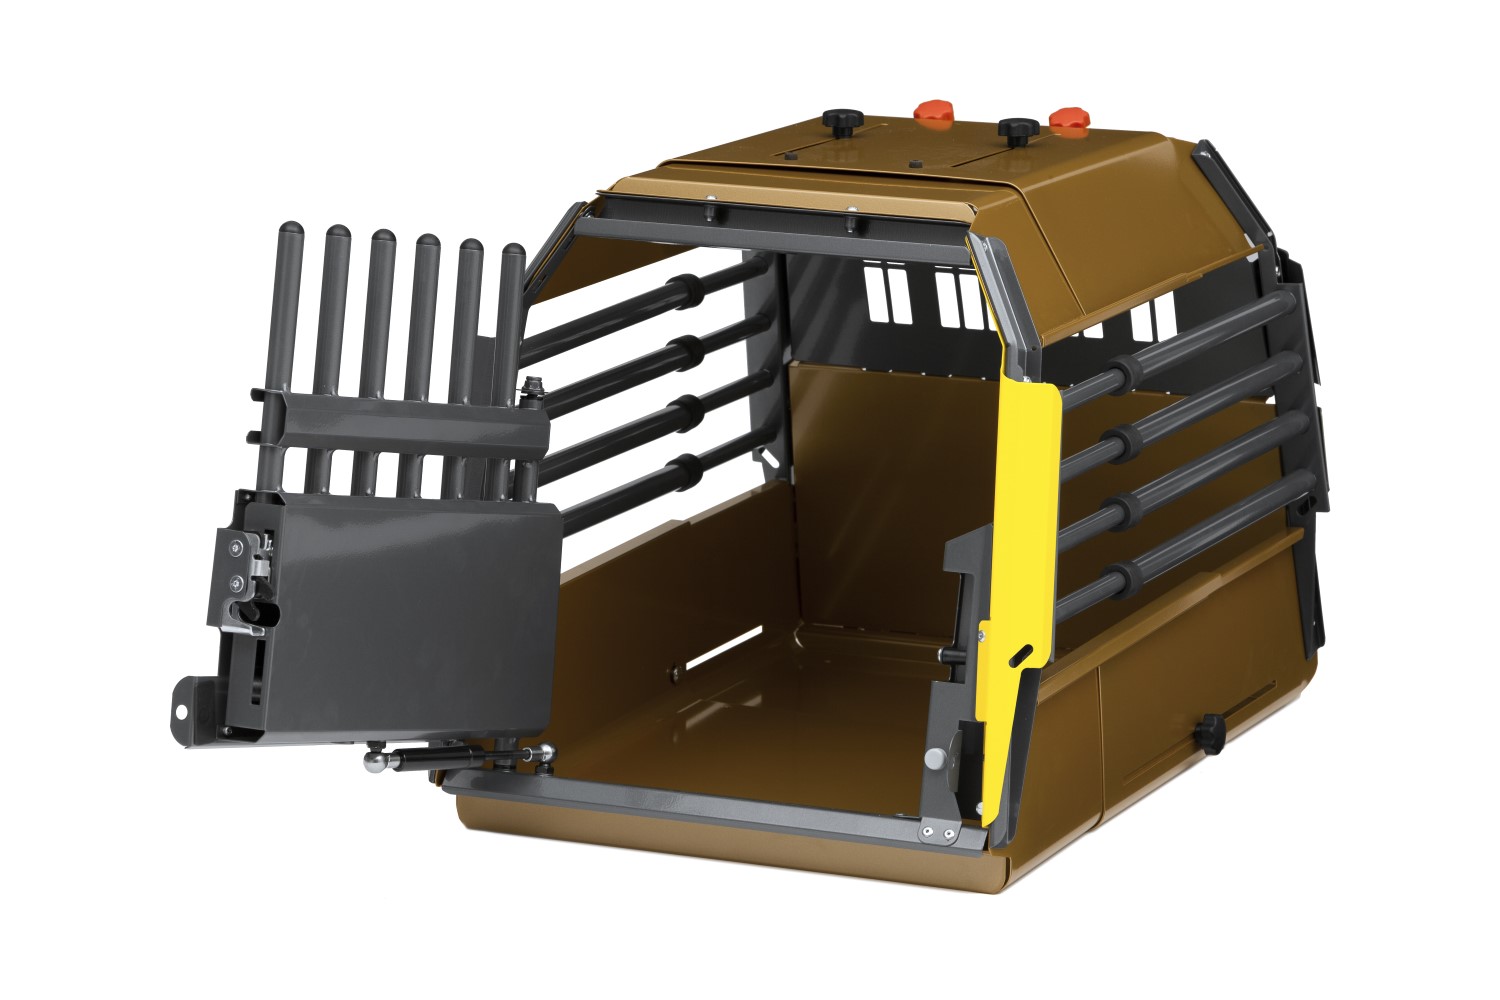 Dog crate Seat Leon Sportstourer (KL) VarioCage MiniMax L